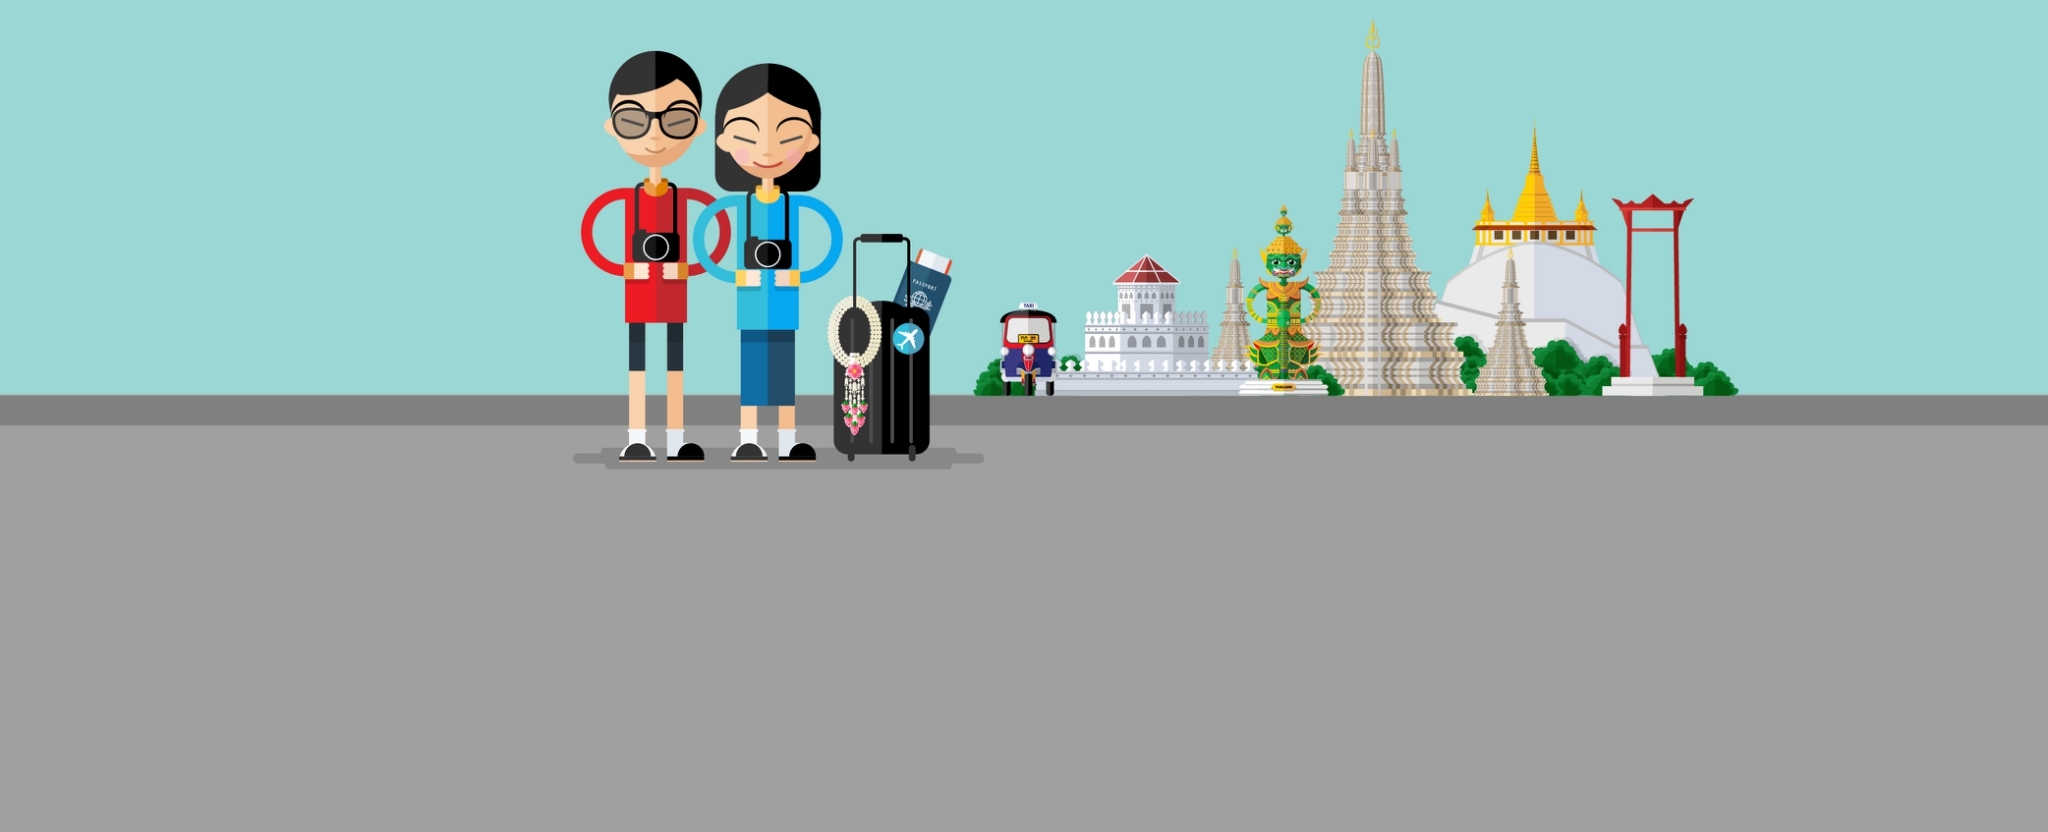 นักท่องเที่ยวต่างชาติมาไทย 10 เดือนแรกของปี 2562 เพิ่มขึ้น 4.3%